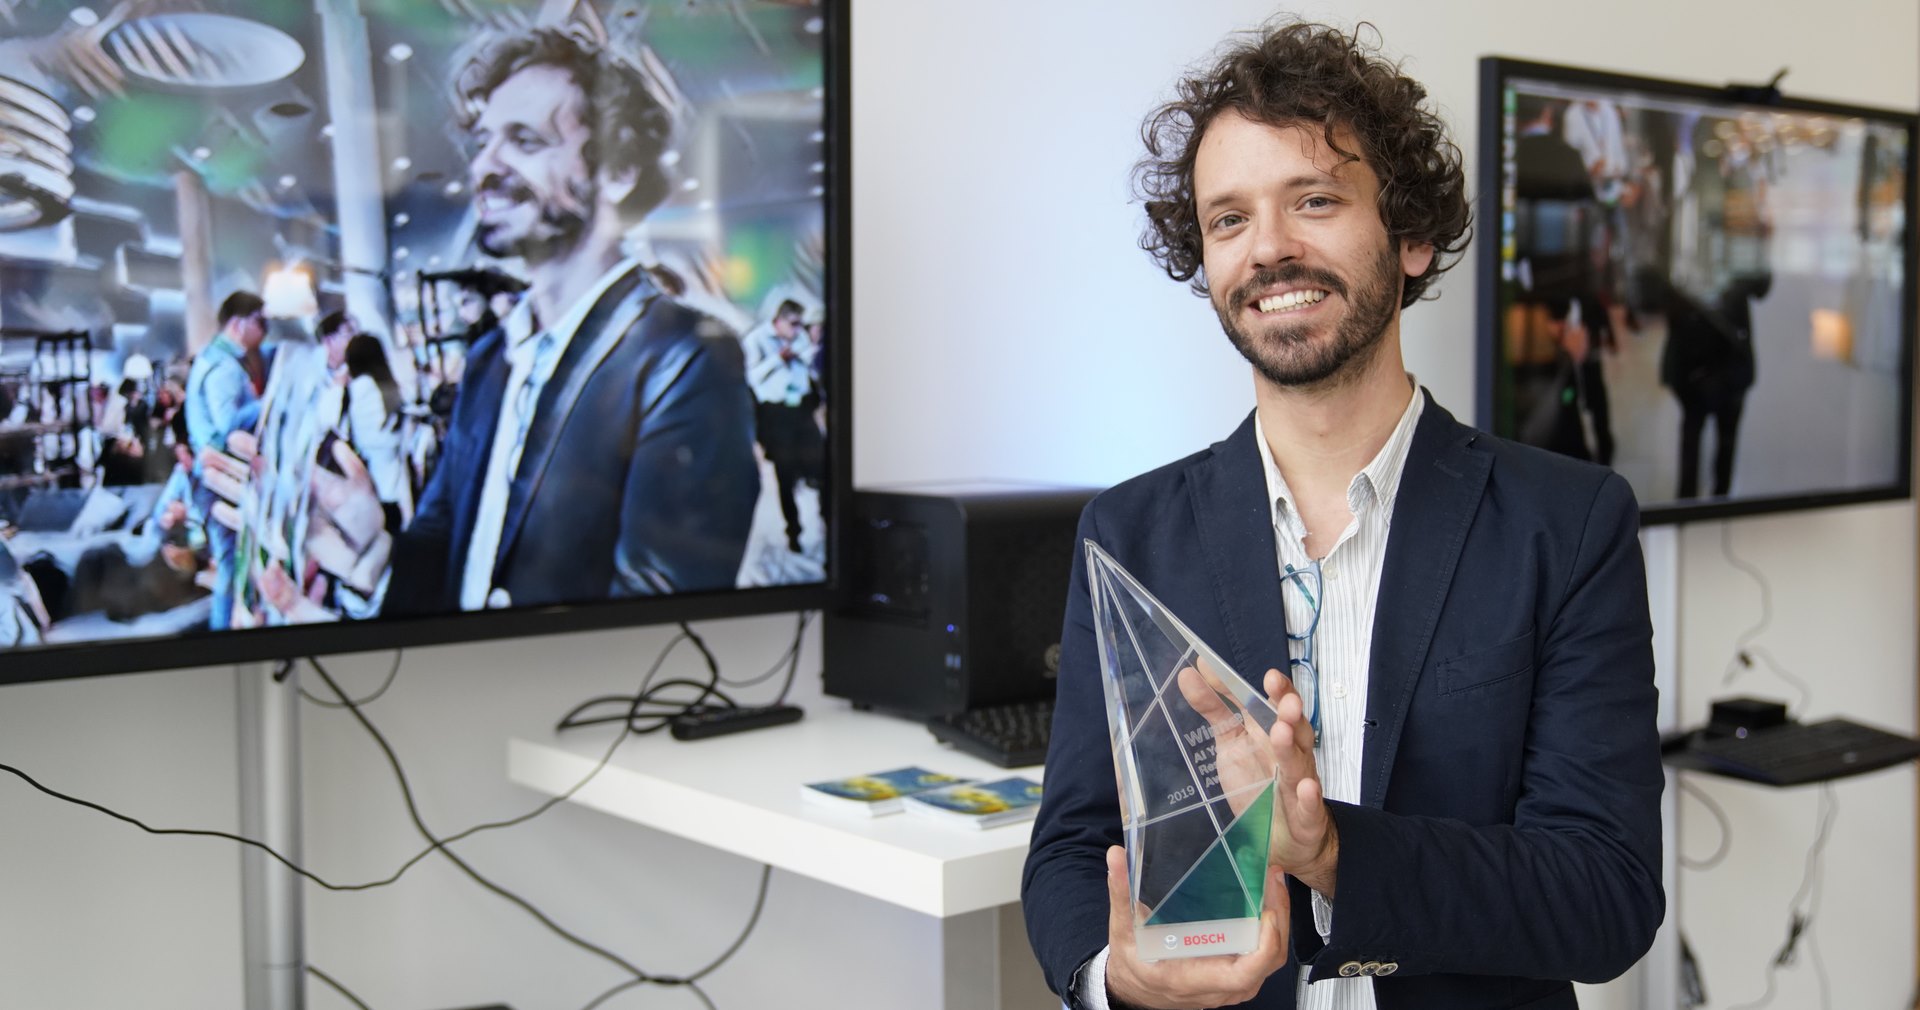 dr Gergely Neu, naukowiec pracujący w Hiszapni otrzymał nagrodę Bosch AI Young Researcher Award